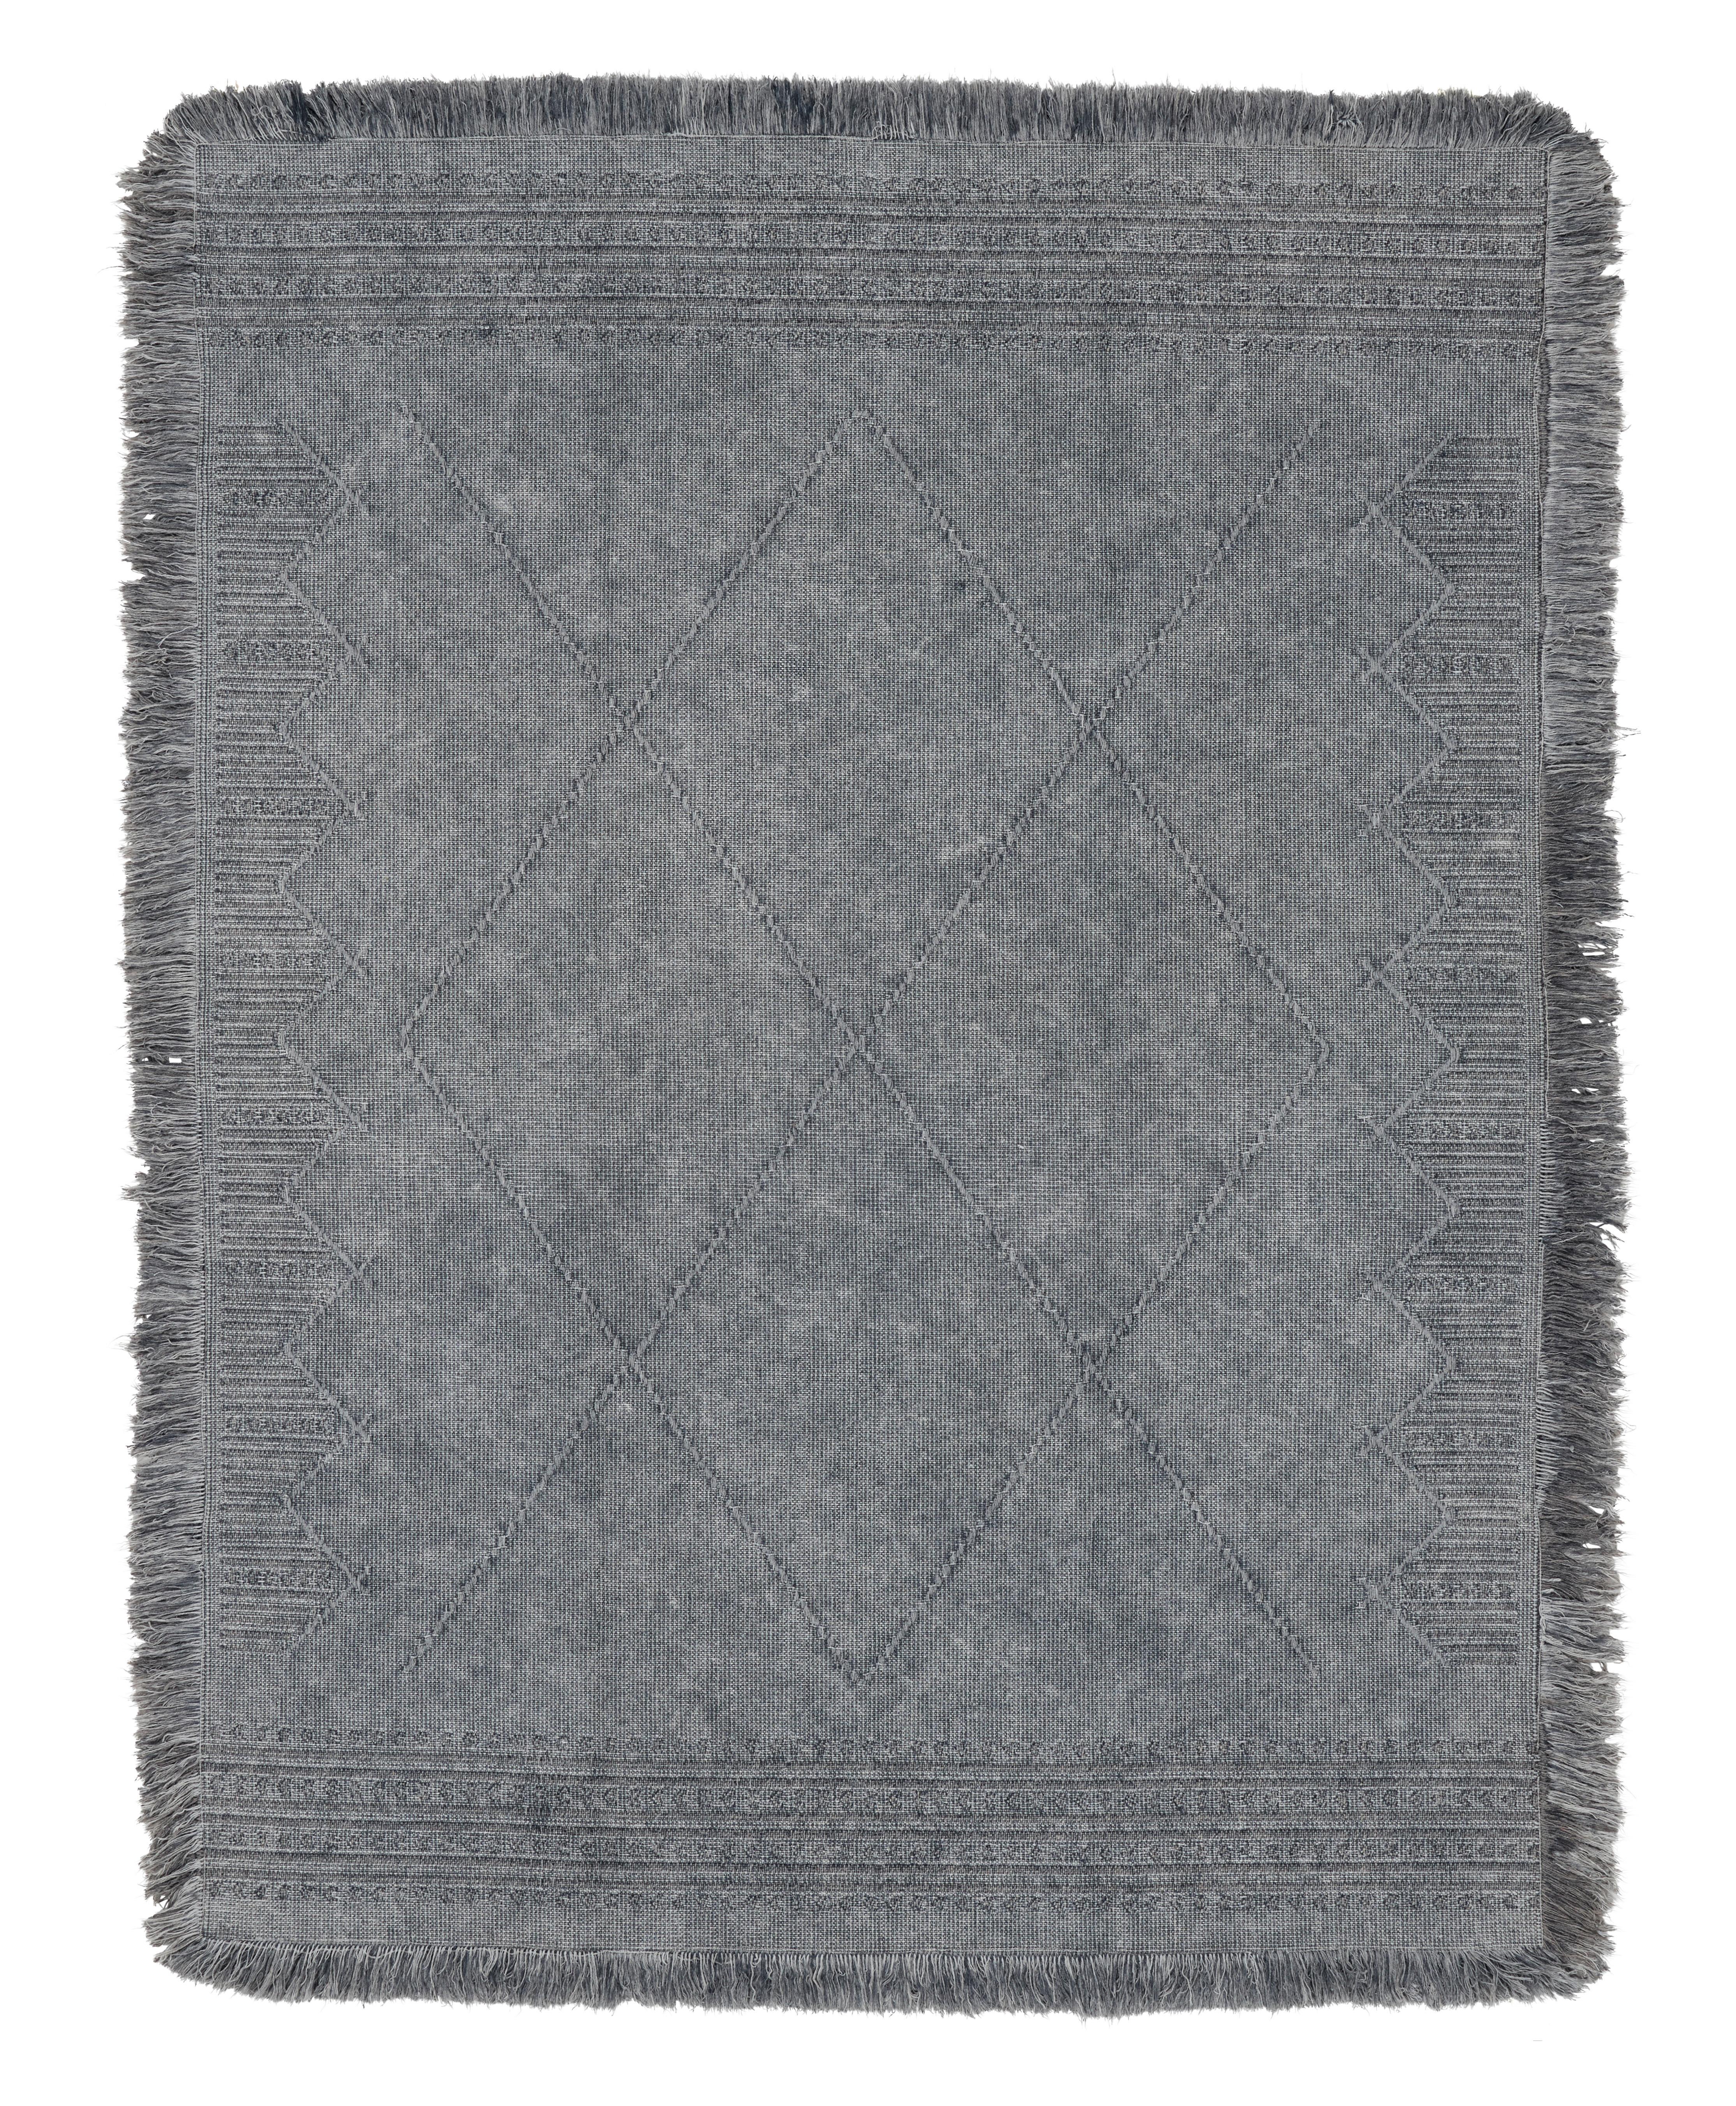 Ručně Tkaný Koberec Monaco 3, 160/230cm, Šedá - šedá, textil (160/230cm) - Modern Living